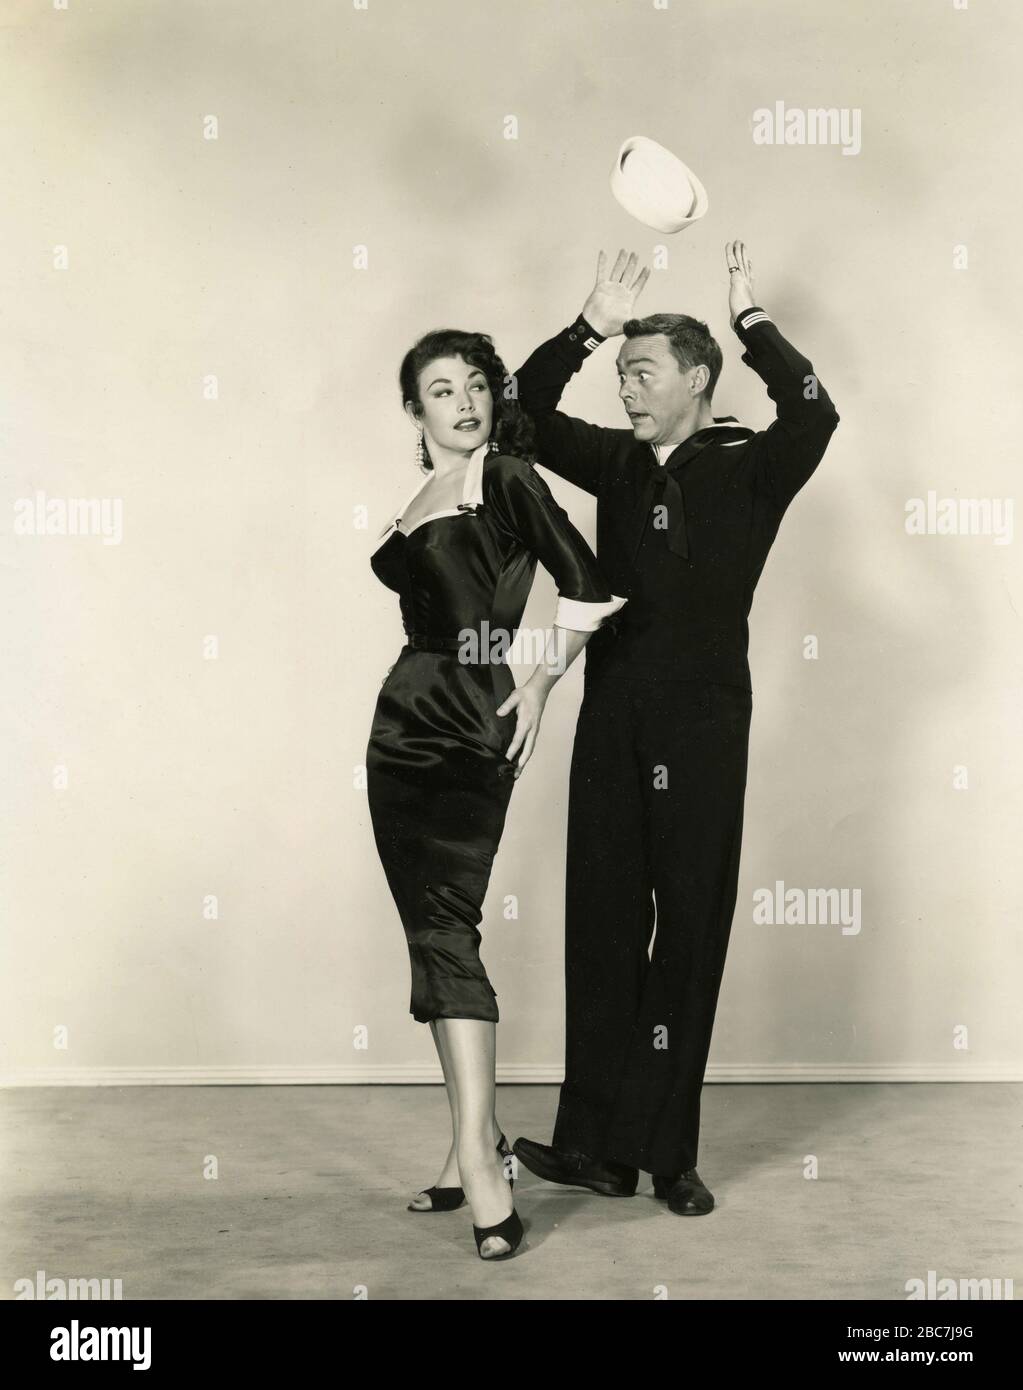 Les acteurs américains Gene Kelly et Kathryn Grayson dans le film Anchors Asoud, USA 1945 Banque D'Images